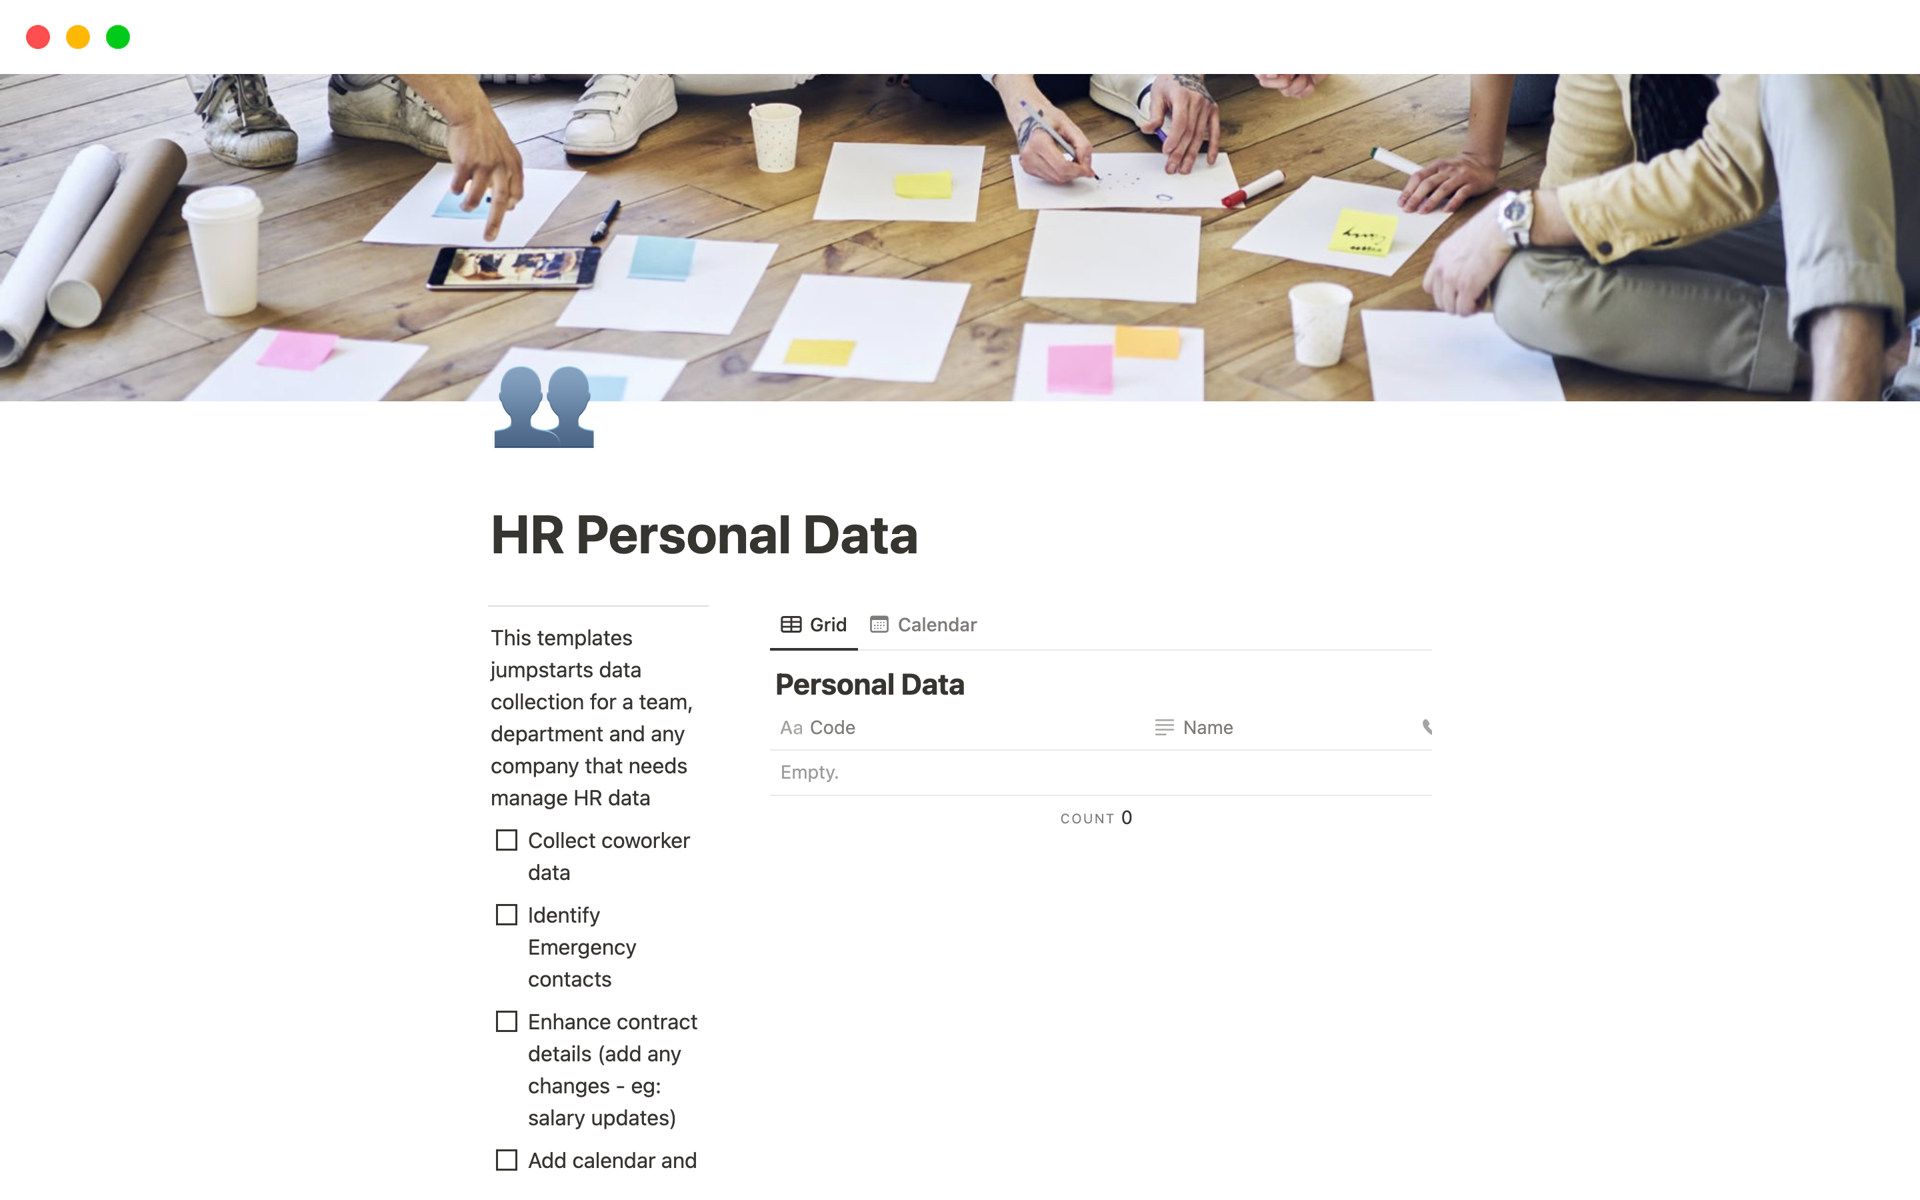 Uma prévia do modelo para HR Personal Data